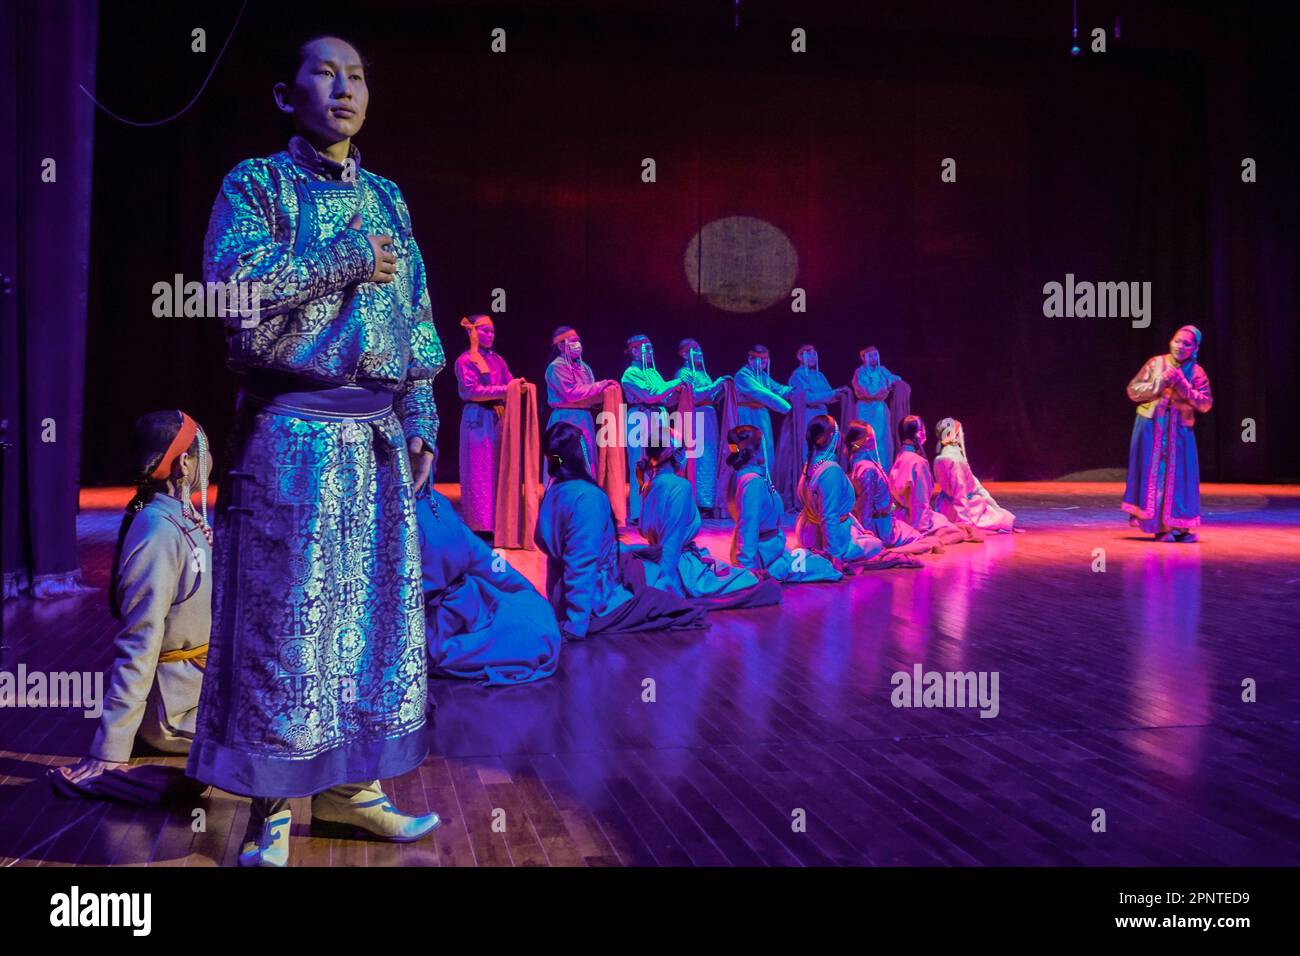 Purevsuren Lhagvajav, Mitglied des Musik- und Drama-Theaters der Provinz Umnugovi, tritt am 23. März 2022 bei einer Probe für das St. Muse International Theater Festival in der Provinz Umnugovi, Mongolei, im Musical „Blaue Sonne“ auf. (Uranchimeg Tsoghuu/Global Press Journal) Stockfoto